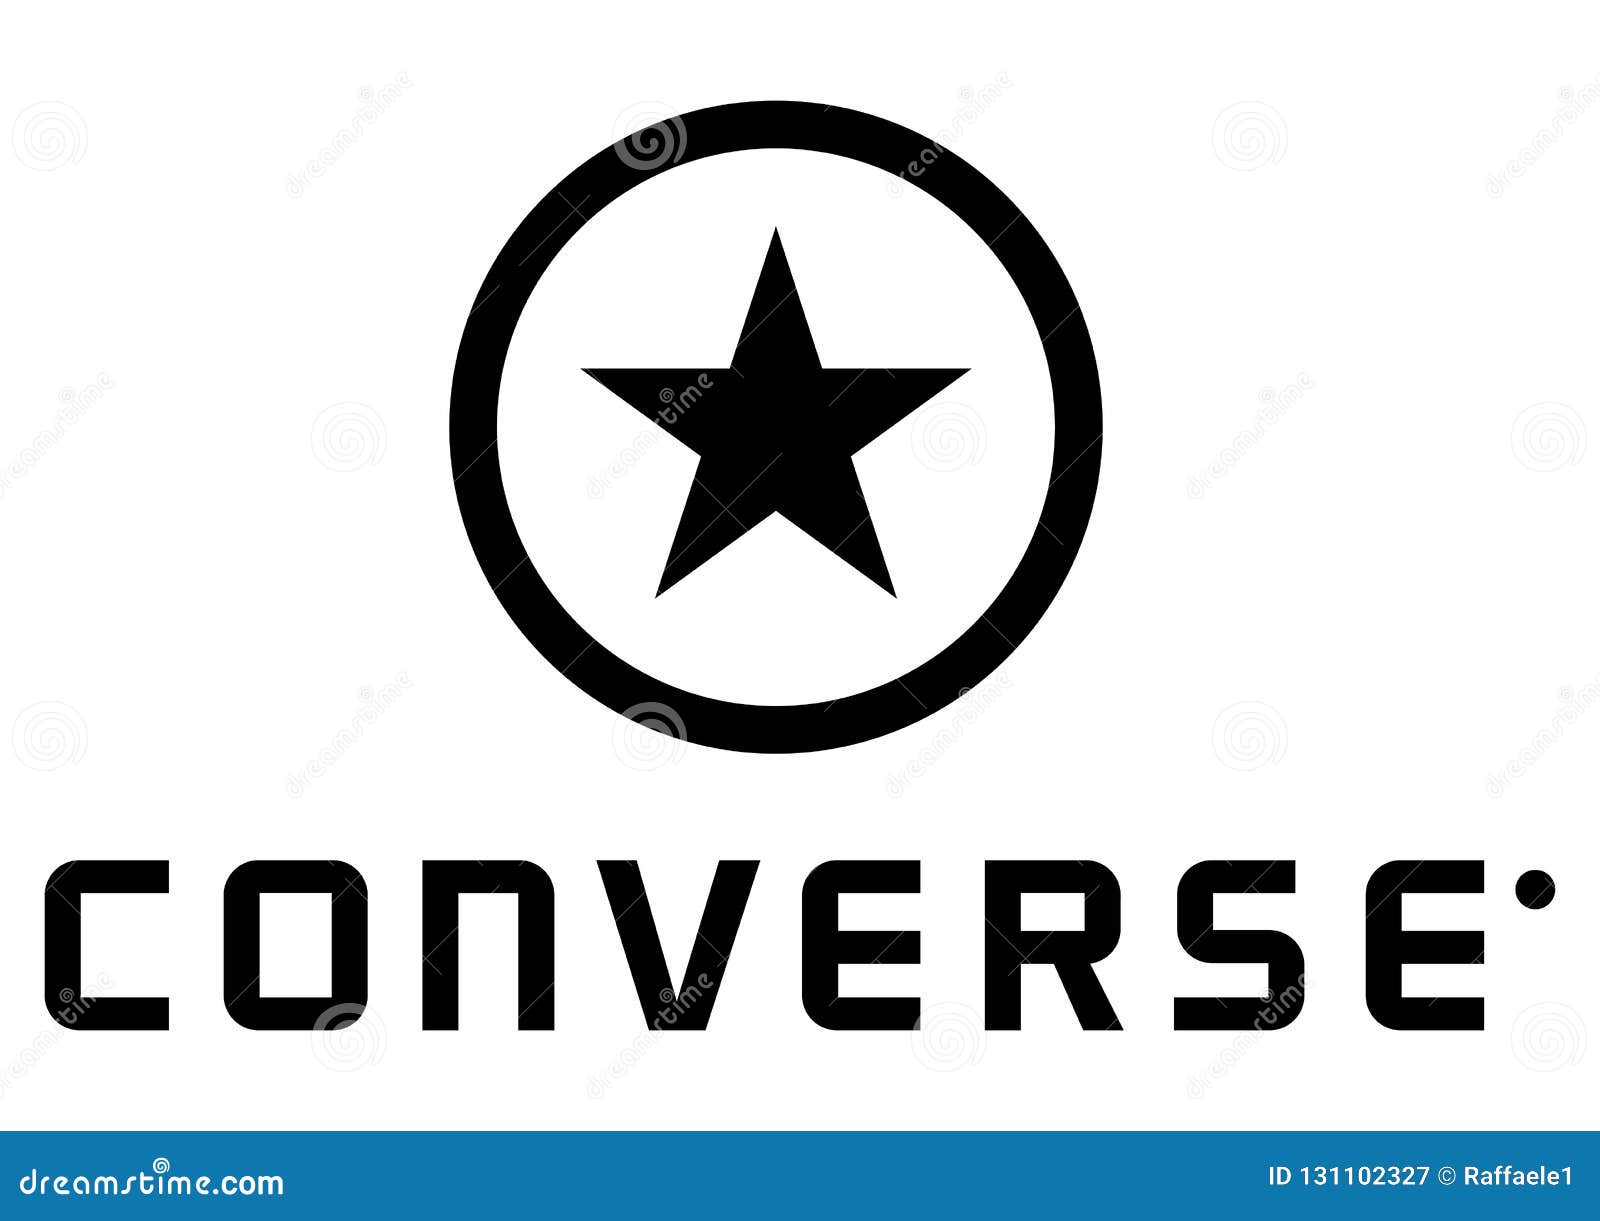 Converse Logo editorial photography. world - 131102327